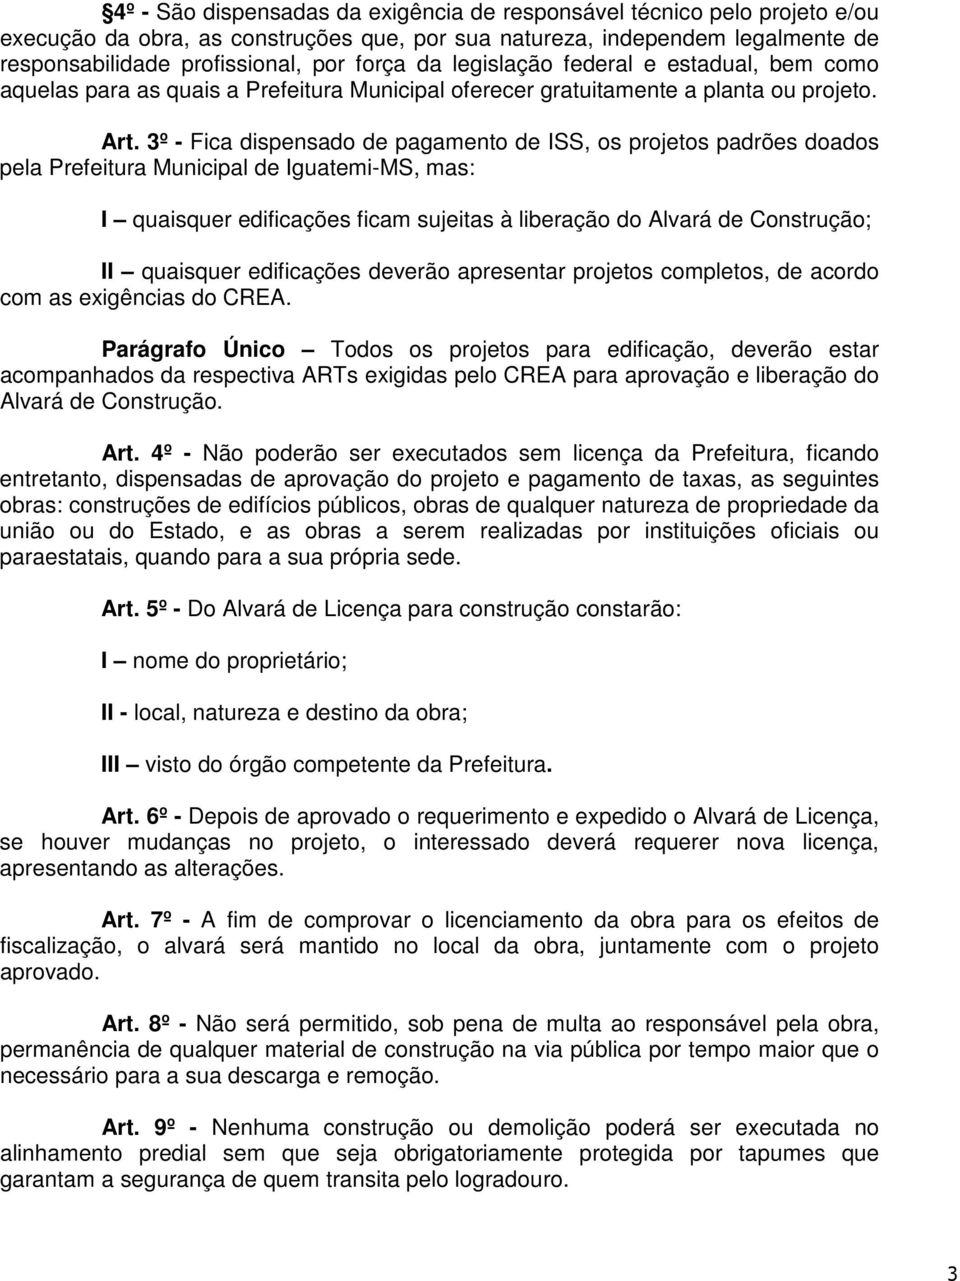 3º - Fica dispensado de pagamento de ISS, os projetos padrões doados pela Prefeitura Municipal de Iguatemi-MS, mas: I quaisquer edificações ficam sujeitas à liberação do Alvará de Construção; II